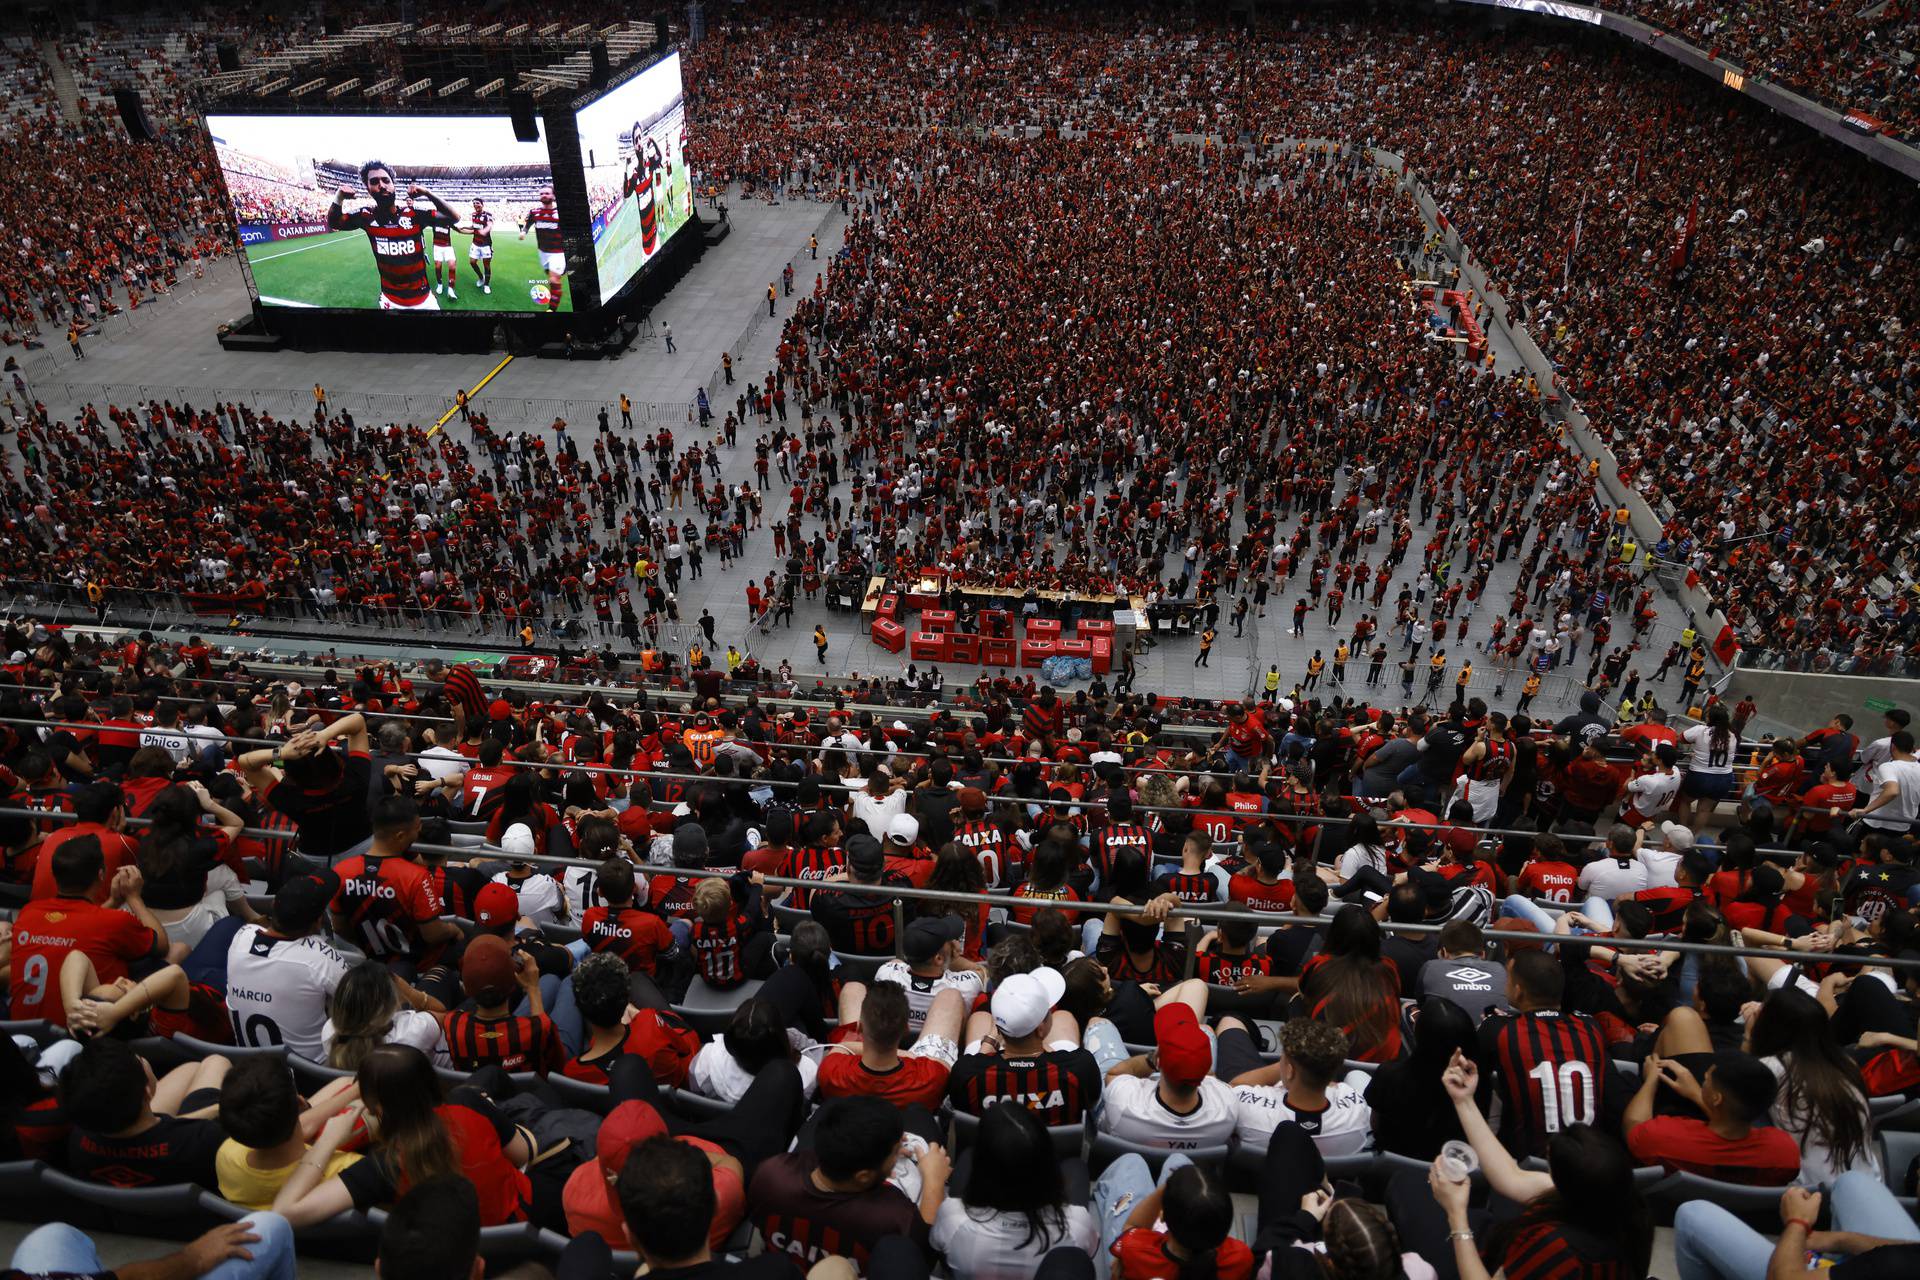 Copa Libertadores - Fans gather to watch the Copa Libertadores final between Flamengo and Athletico Paranaense